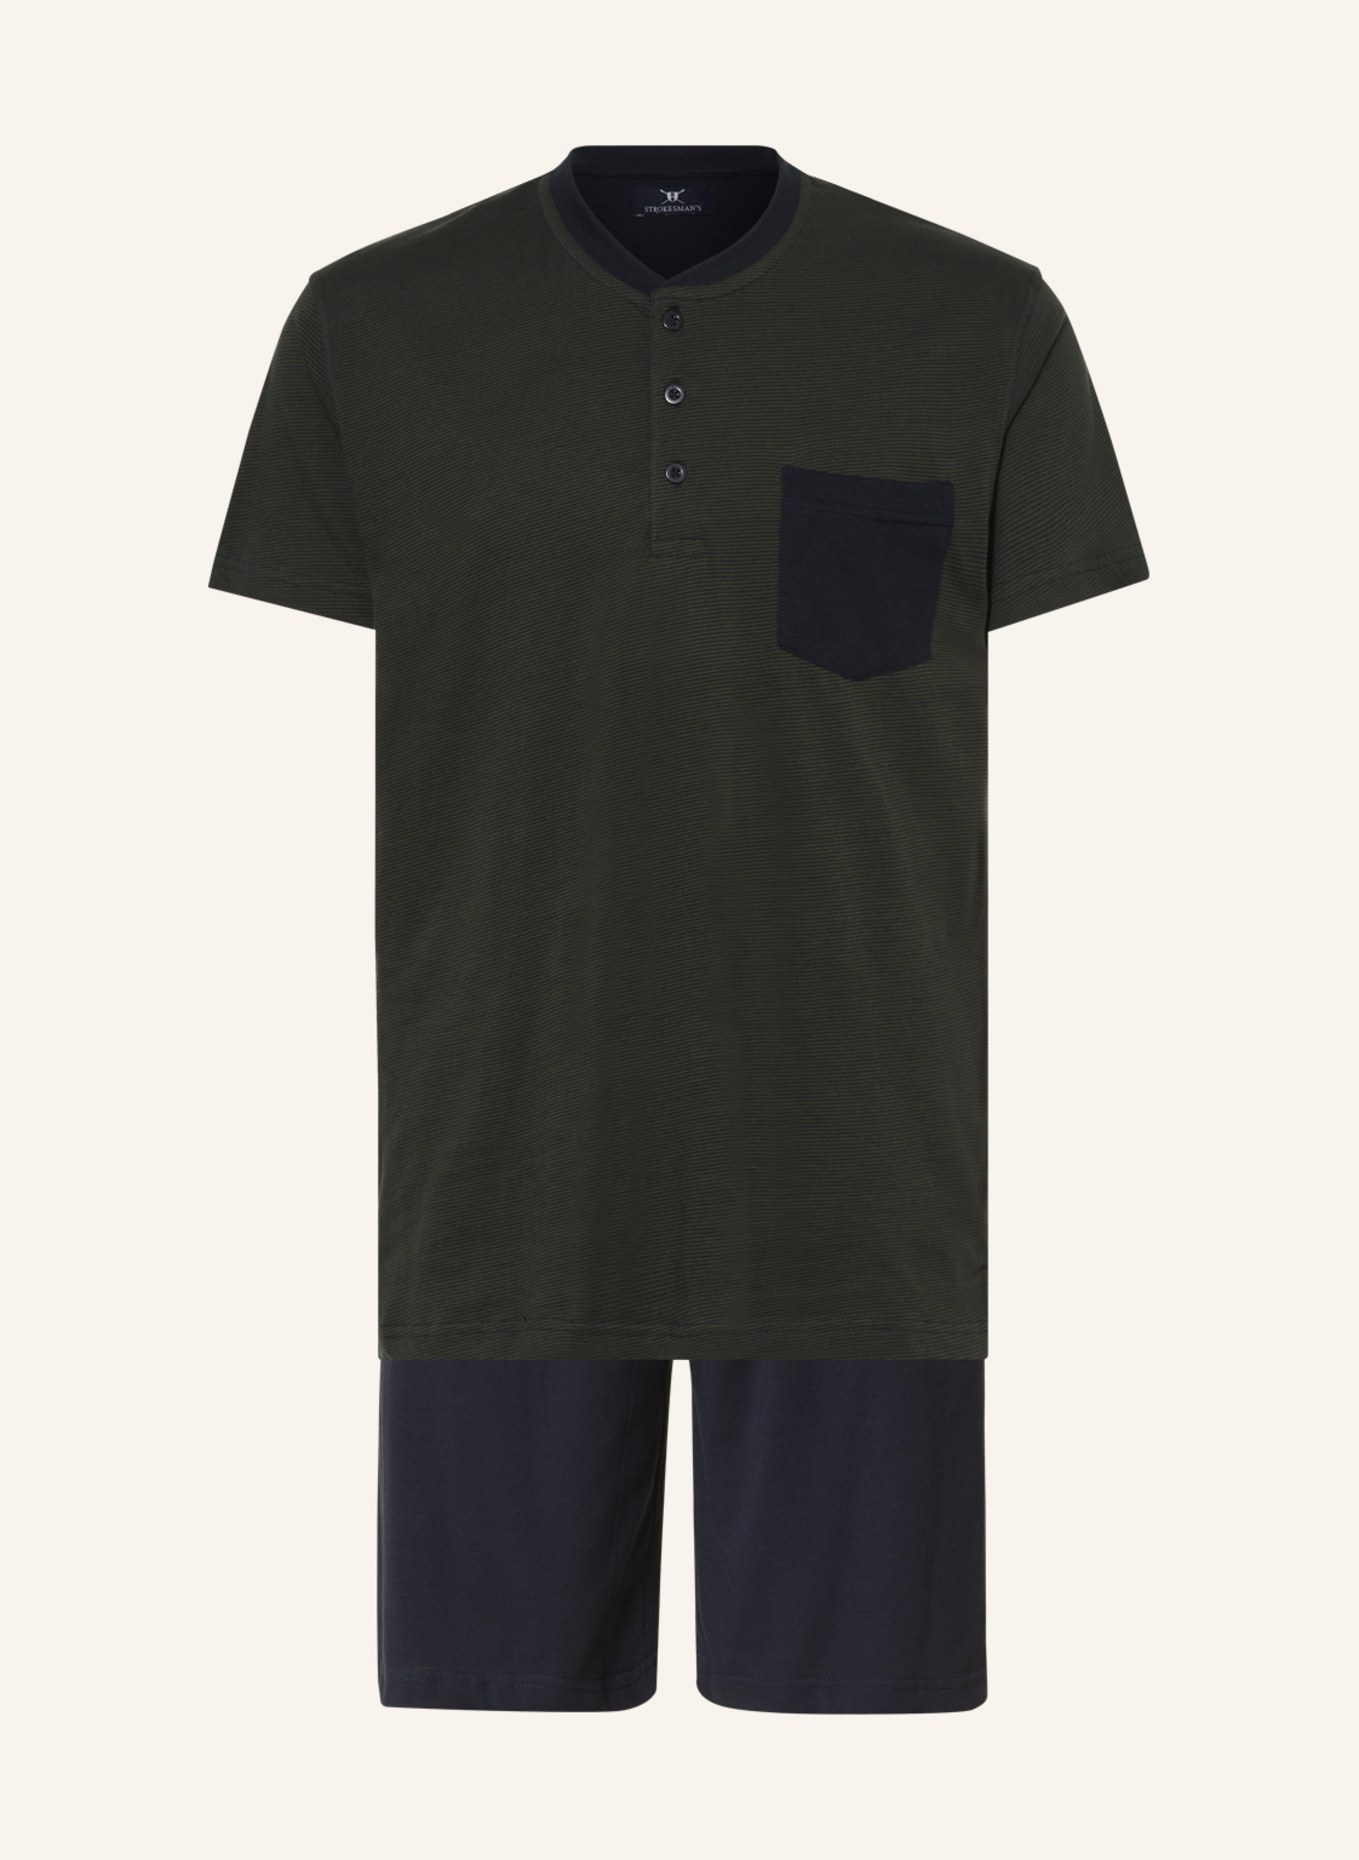 STROKESMAN'S Shorty-Schlafanzug, Farbe: DUNKELGRÜN/ DUNKELBLAU (Bild 1)